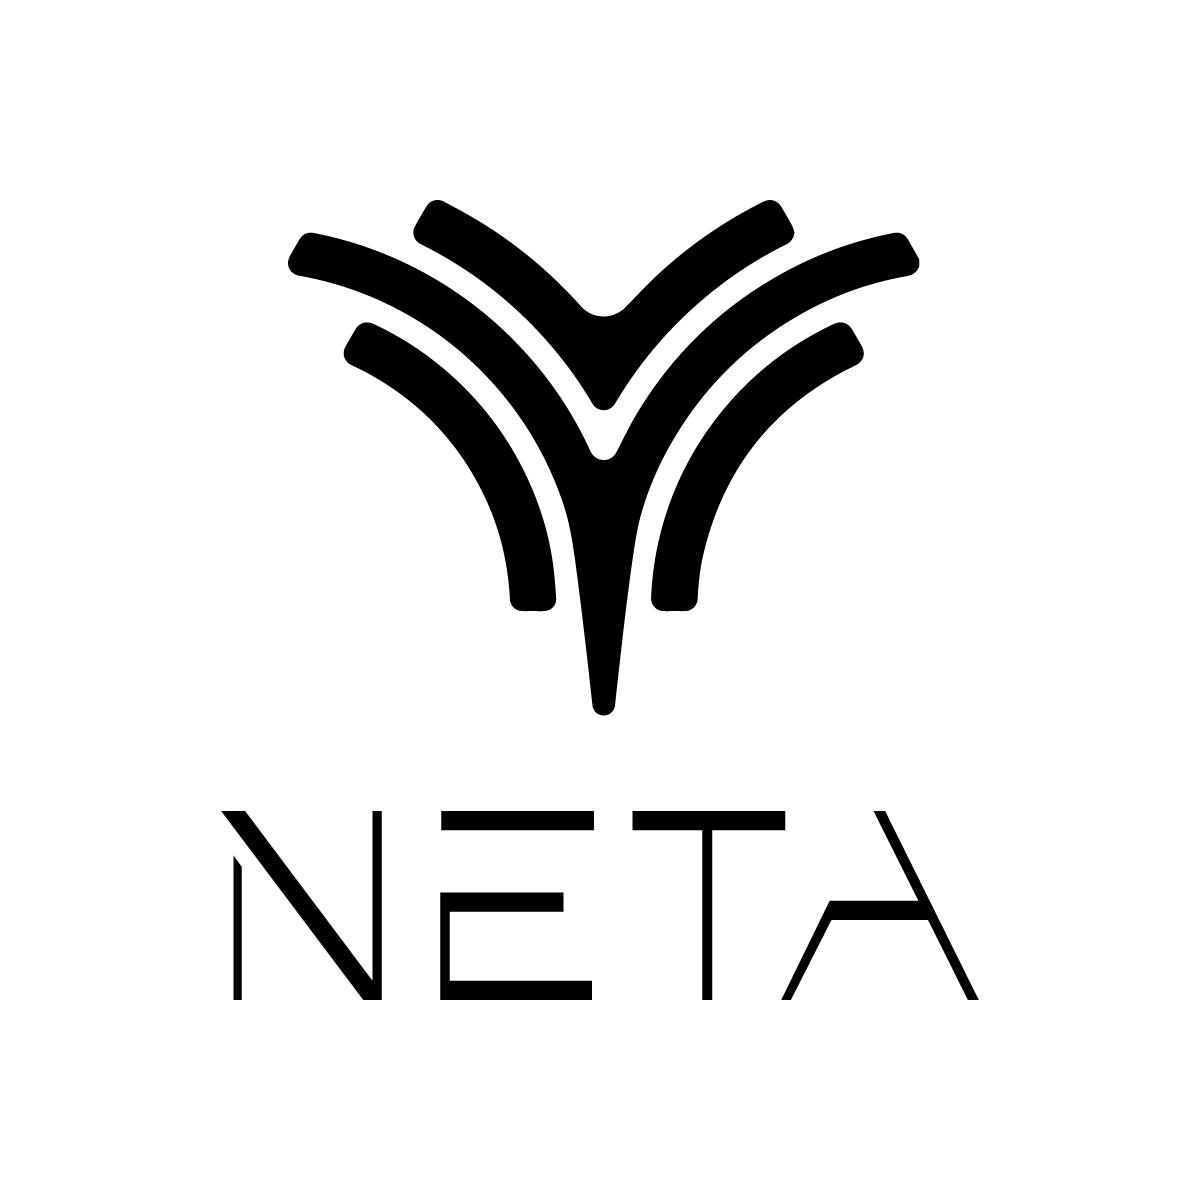 شركة طهبوب للسيارات وكيل سيارات نيتا الكهربائية NETA EV Auto في الاردن 